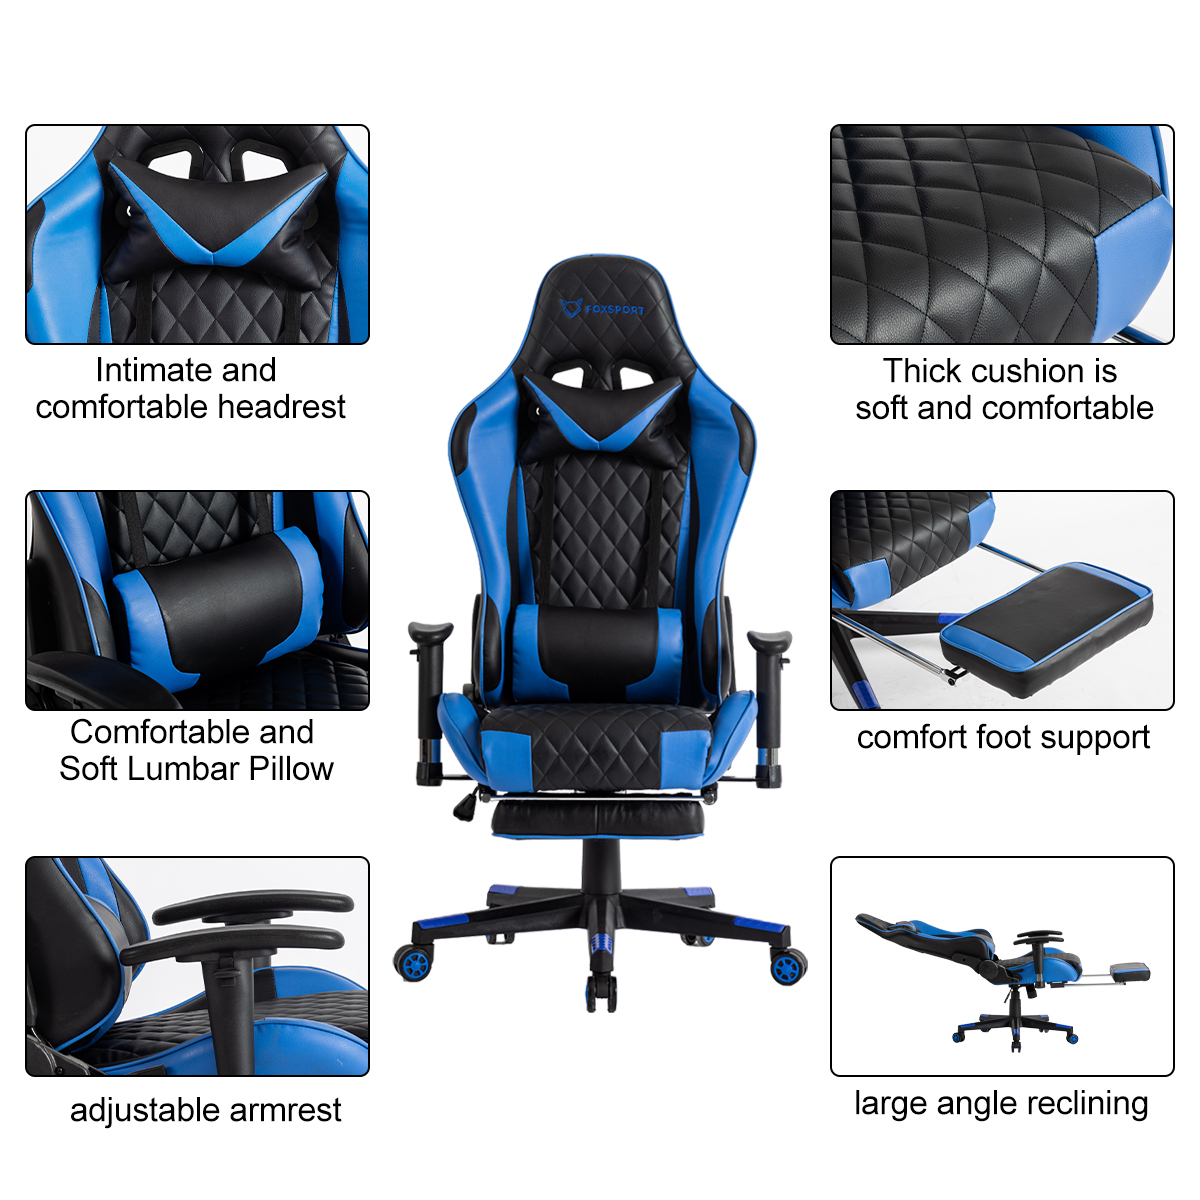 blau FOXSPORT mit Beinstütze Gaming-Stuhl, blau